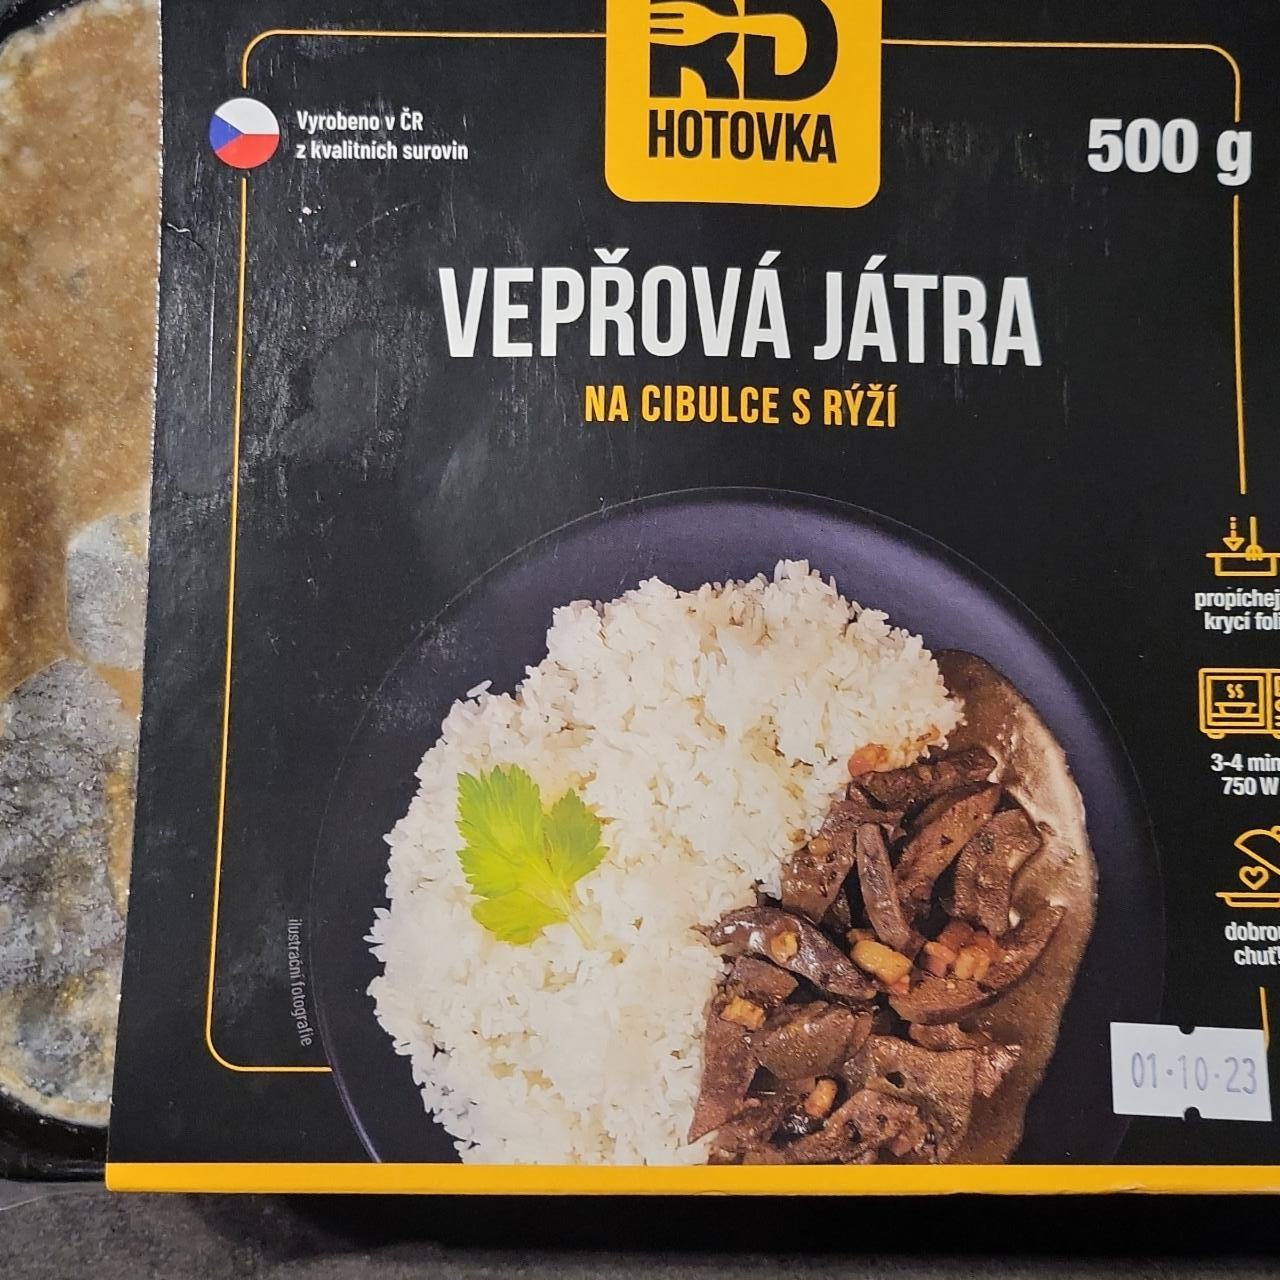 Fotografie - Vepřová játra na cibulce s rýží RD Hotovka